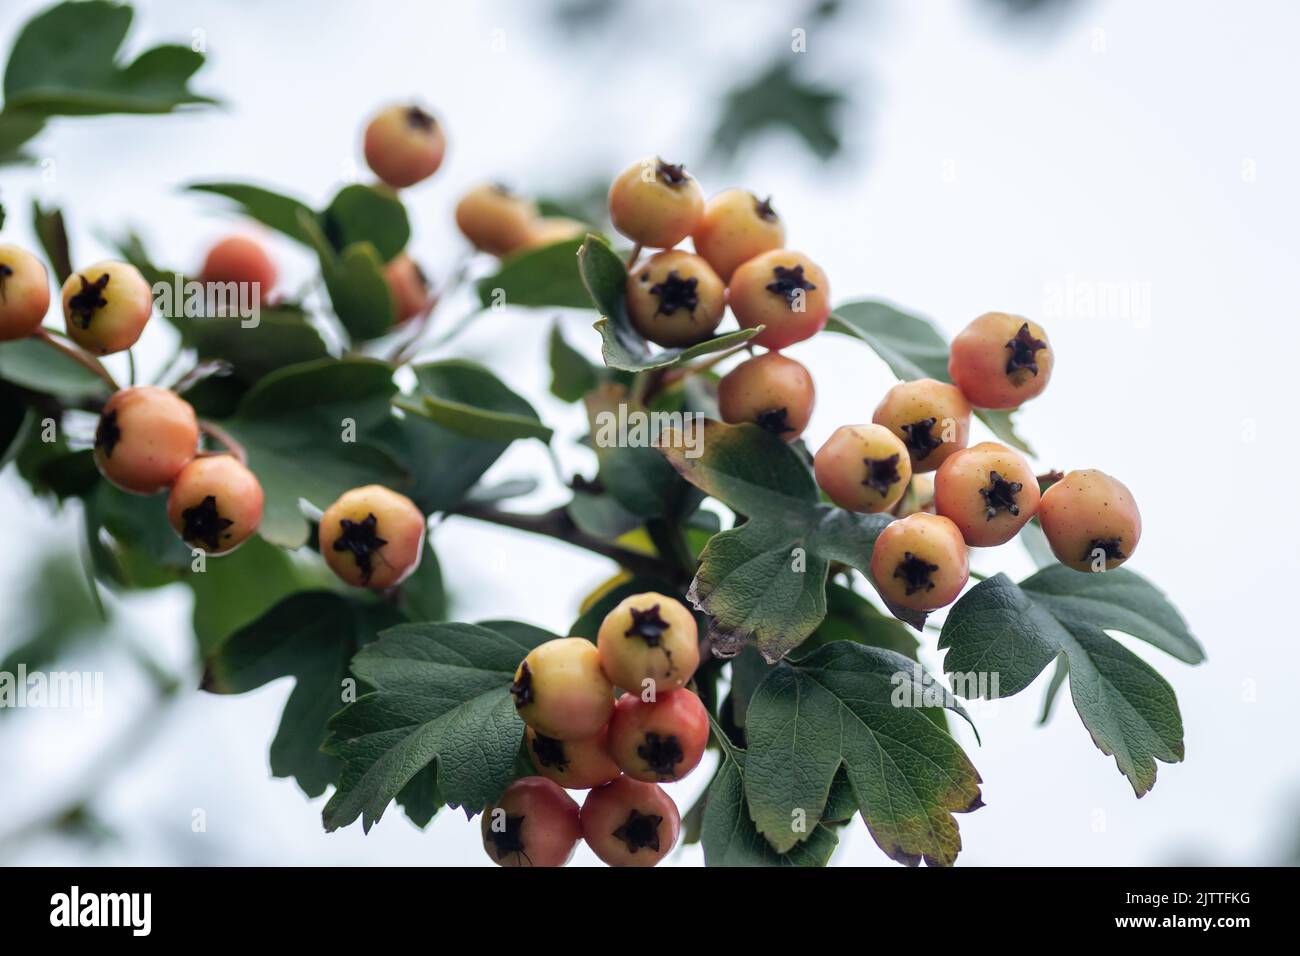 Frutti immaturi su un albero Crataegus in estate. Crataegus biancospino, biancospino, ananas, albero di maggio, biancospino, frutti di bosco maturi rossi sul ramo wit Foto Stock